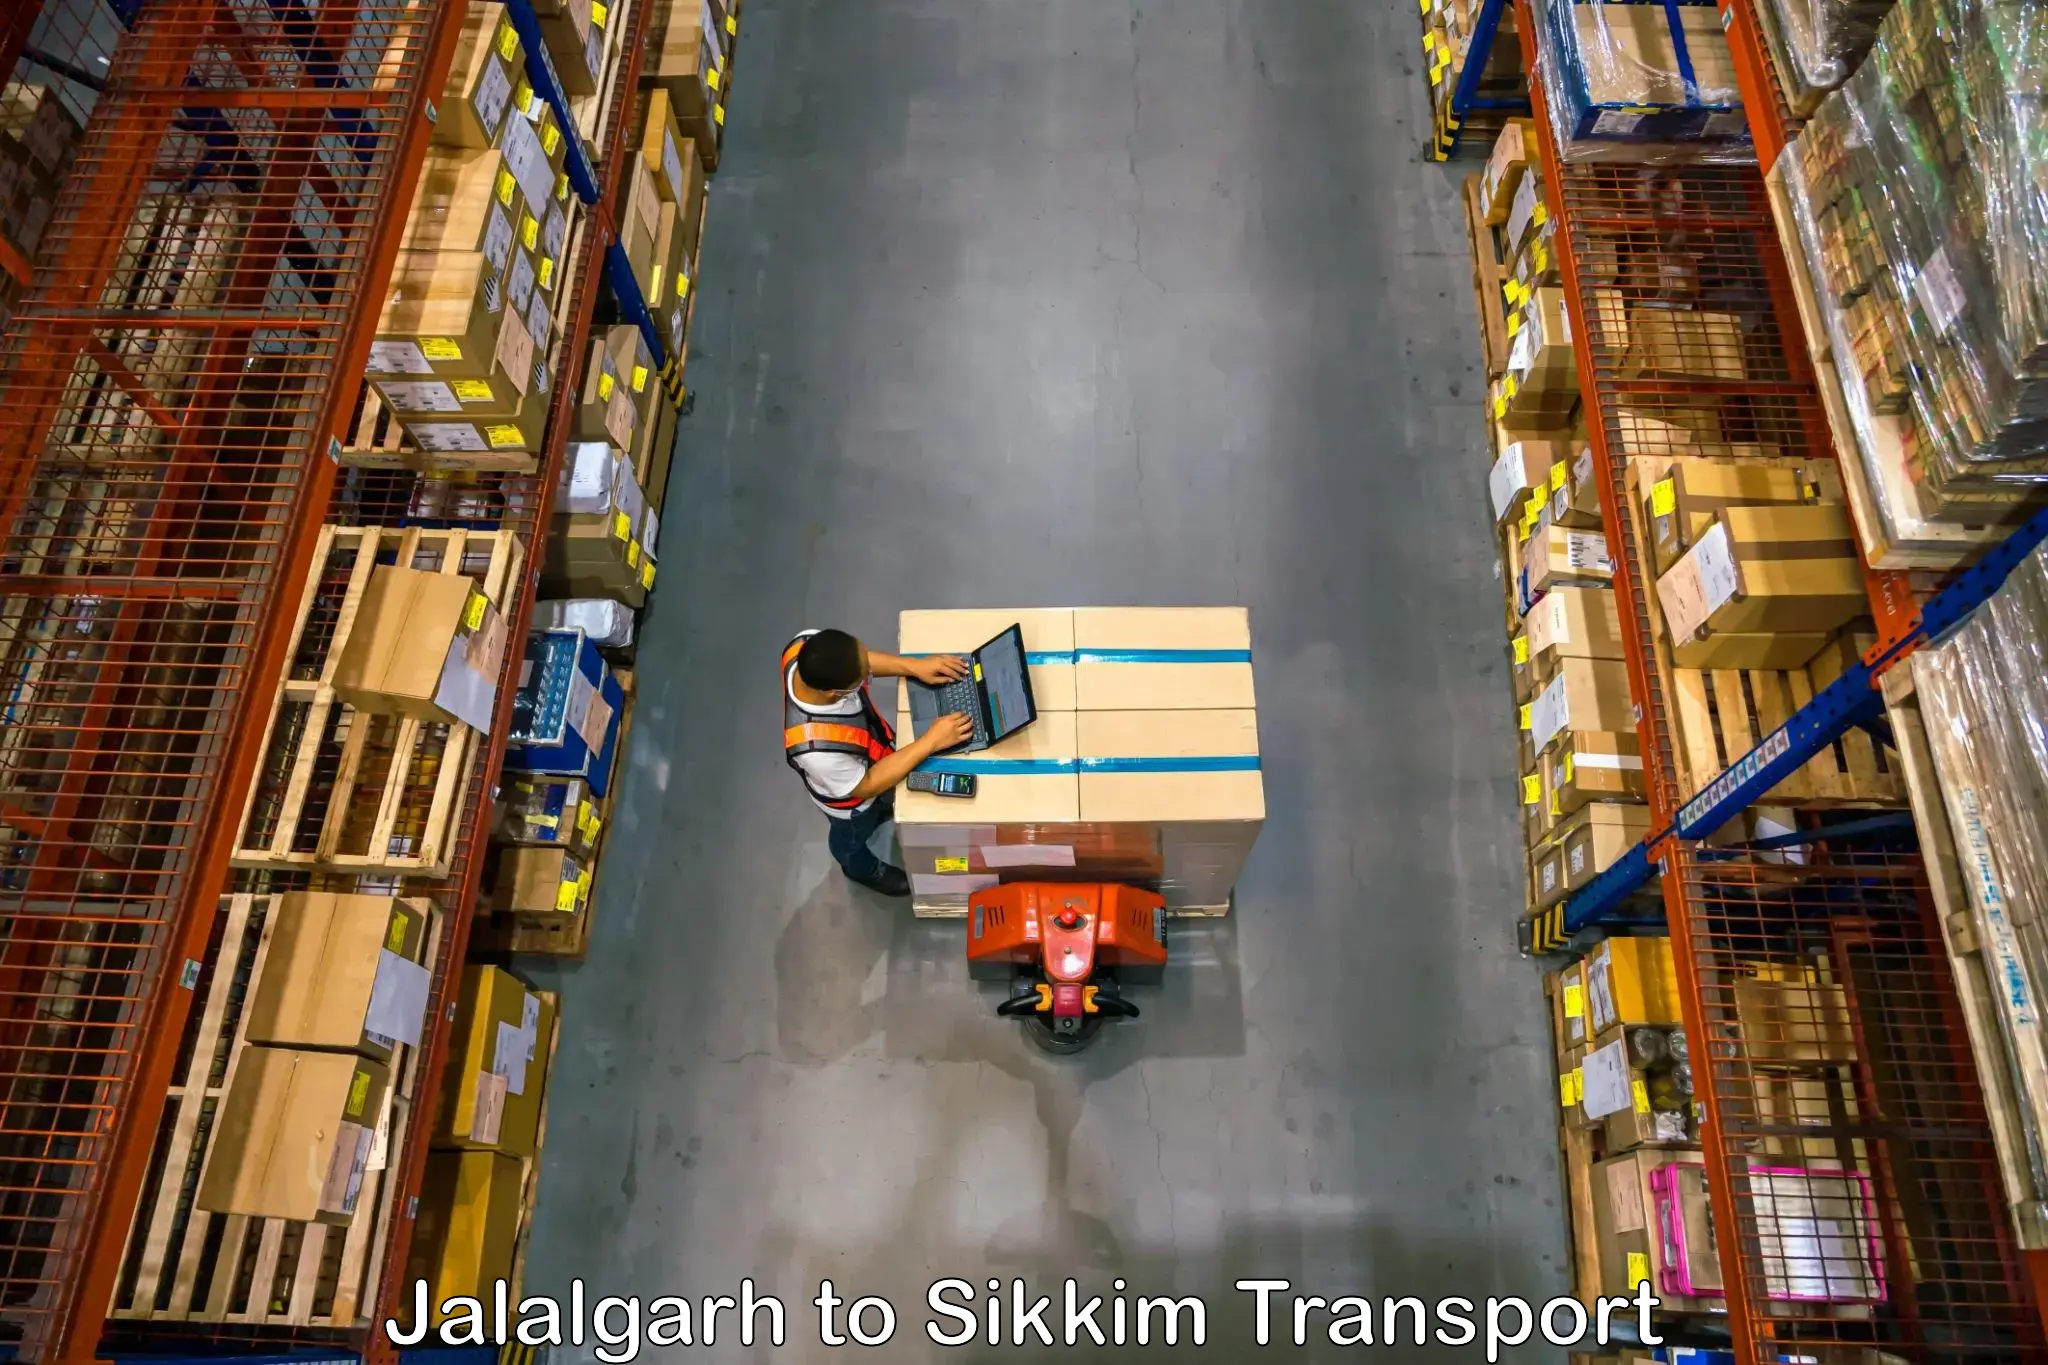 Bike transport service Jalalgarh to South Sikkim